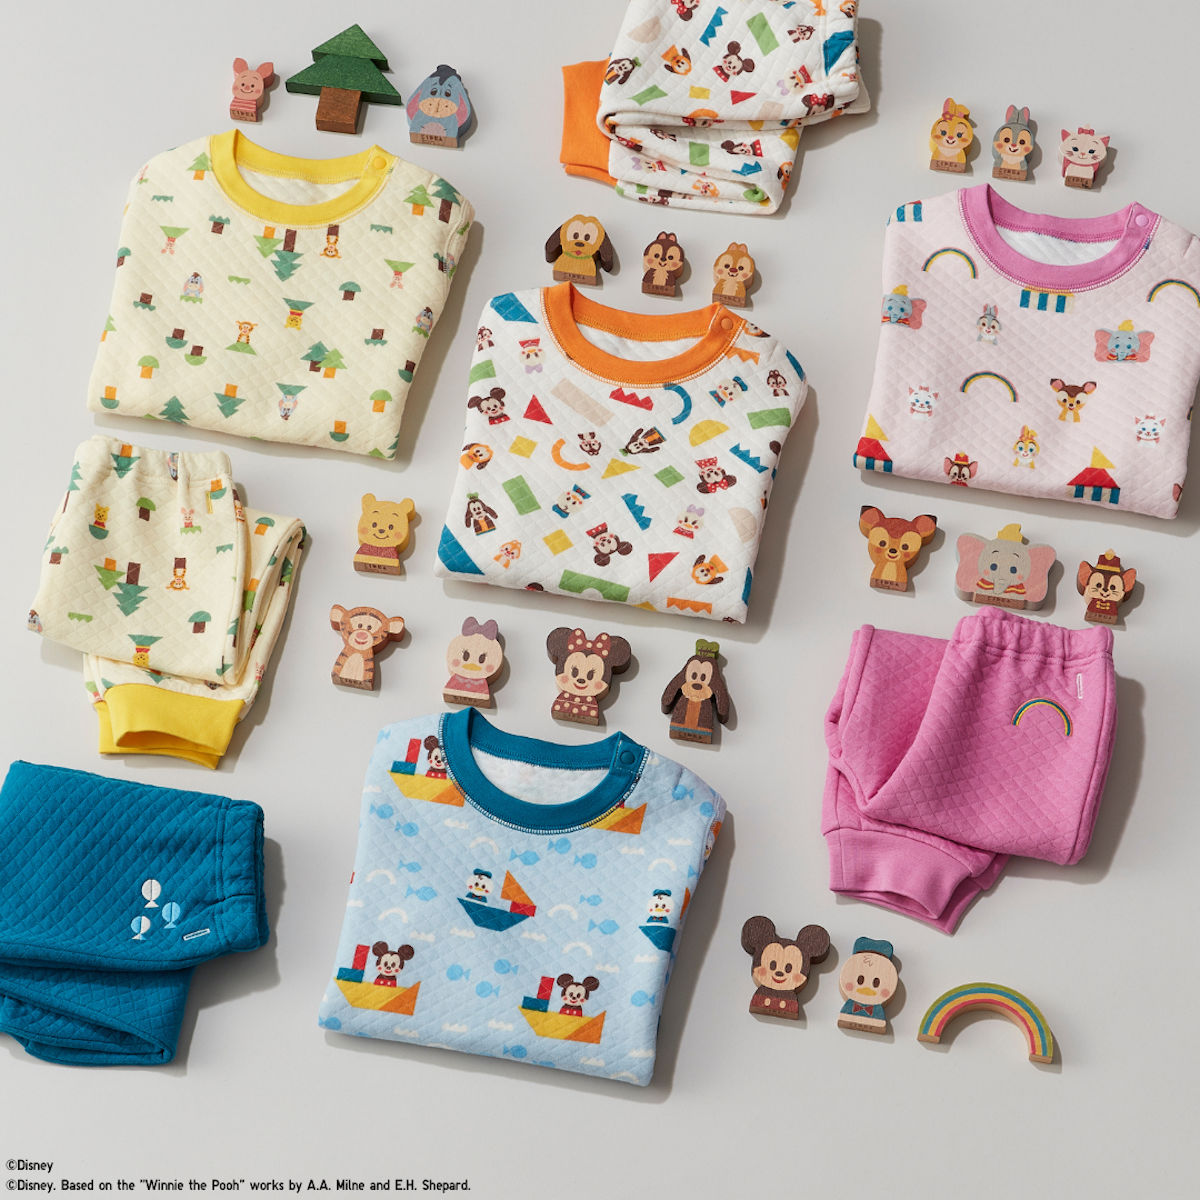 ユニクロ 木製玩具 Disney Kidea がパジャマに 限定特別デザインのミッキーorミニーkideaもプレゼント